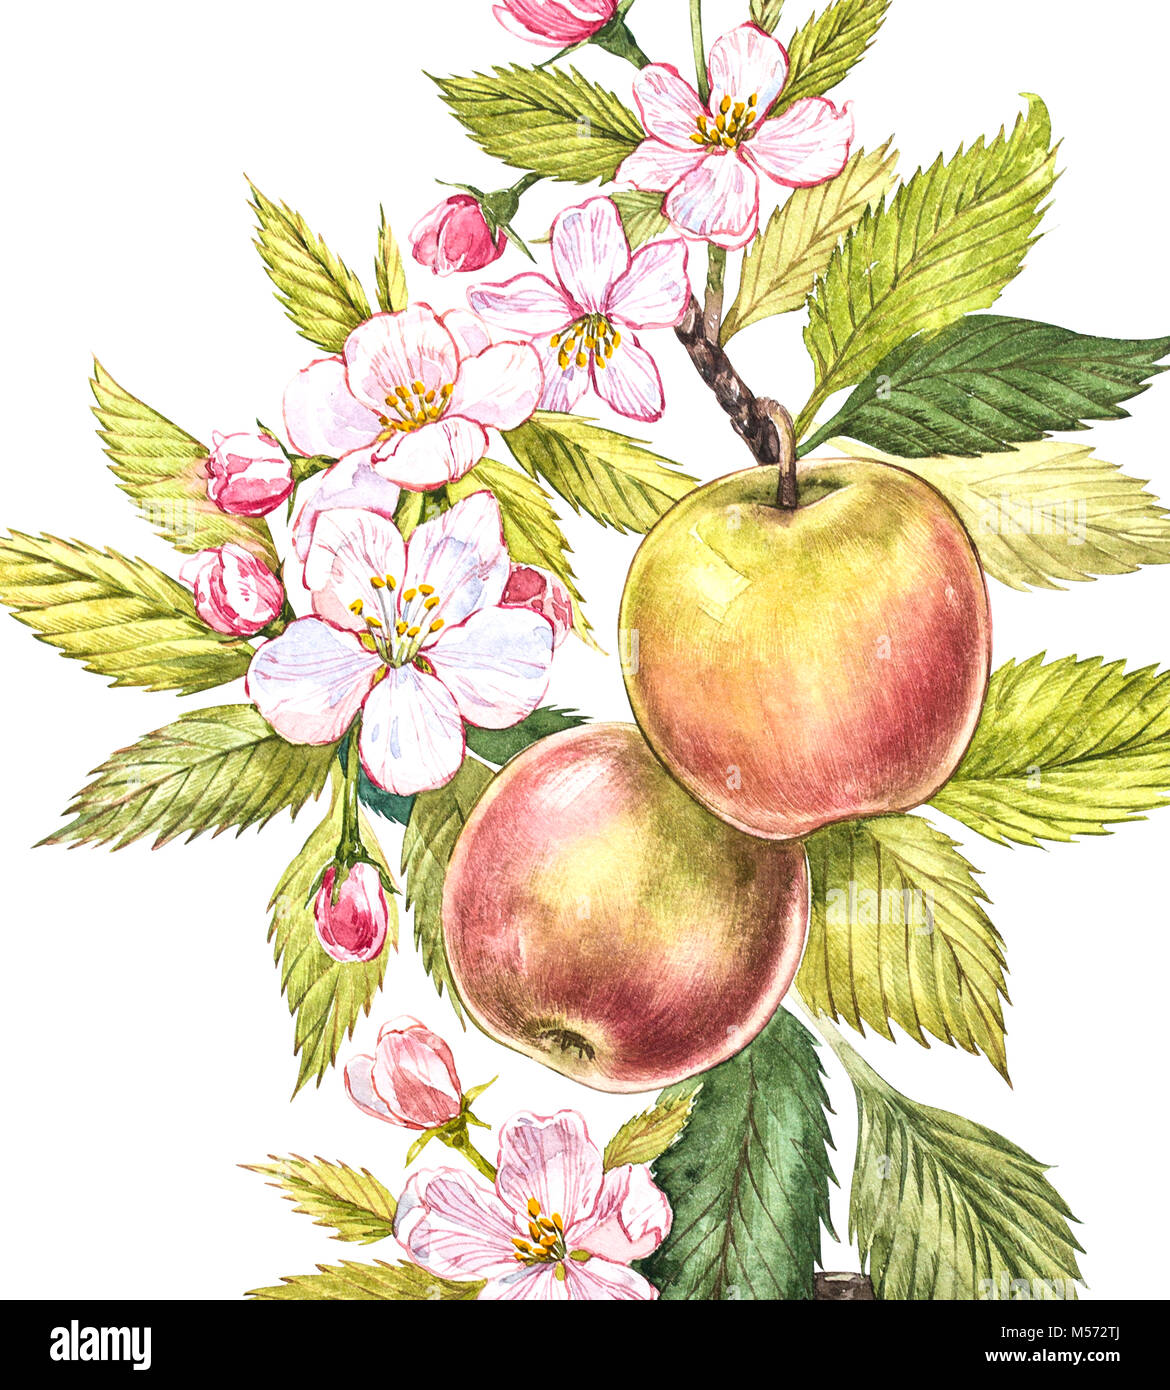 Acquerello Colorato Di Apple A Rami Di Alberi Con Frutti Fiori E Foglie Acquerello Illustrazione Botanica Isolati Su Sfondo Bianco Foto Stock Alamy